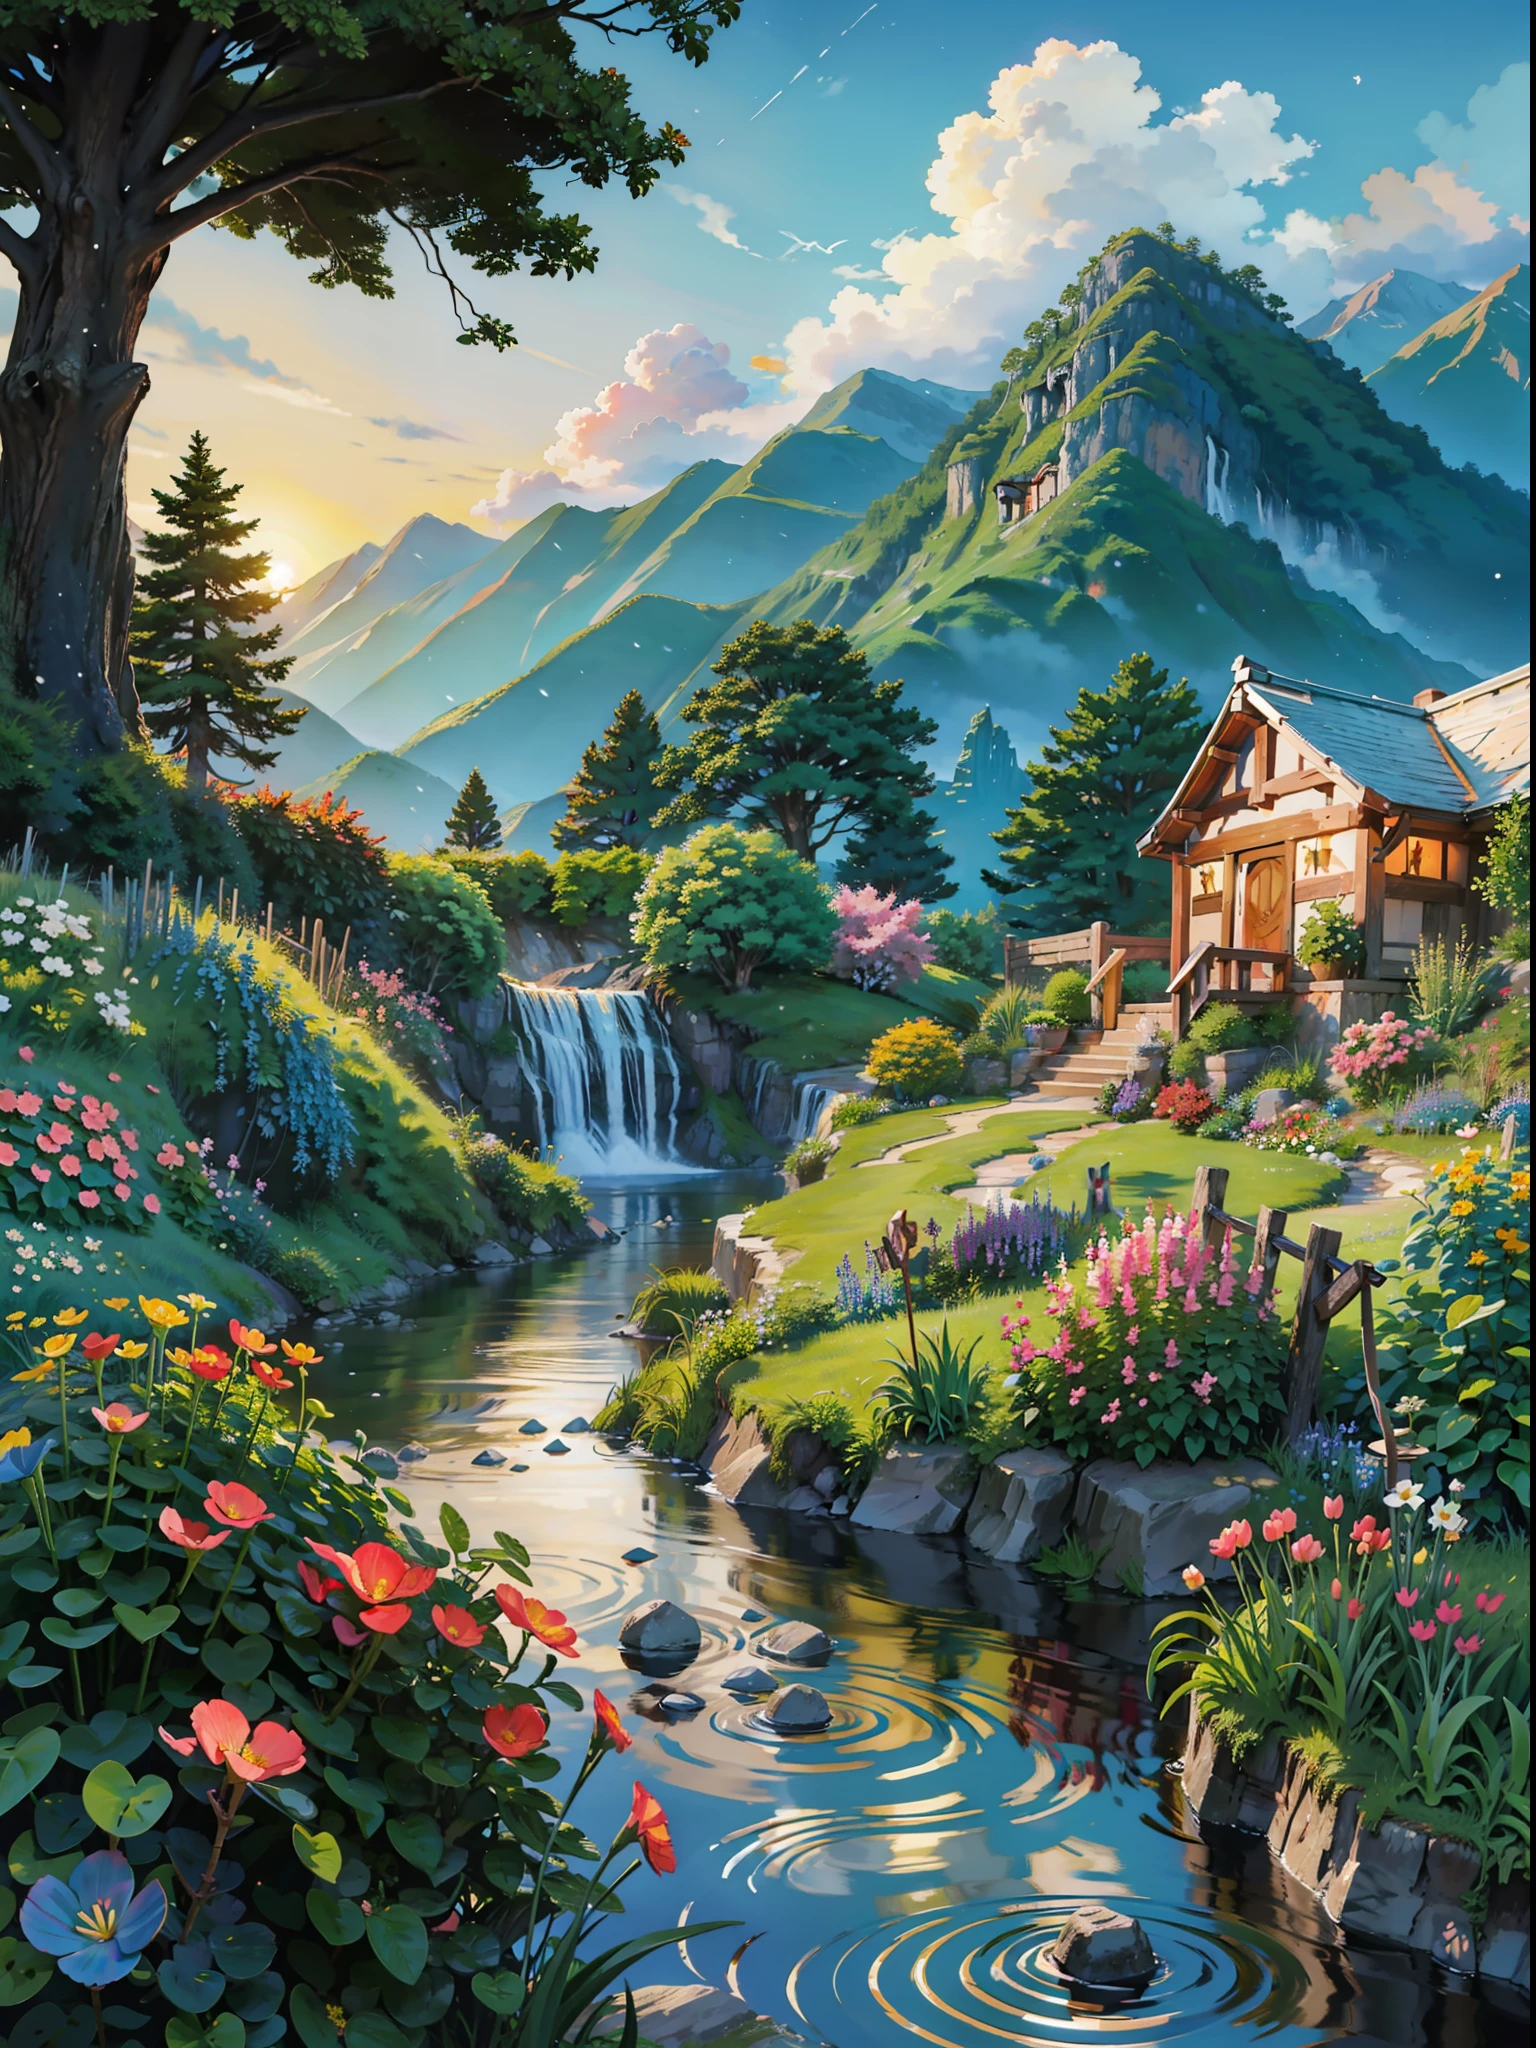 Ilustração de moradias nas montanhas, cachoeiras no quintal, uma bela trilha de tijolos leva a um lindo jardim florido, crianças brincam ao anoitecer ensolarado em um lindo jardim gramado, neves incríveis, pássaros desenham os céus